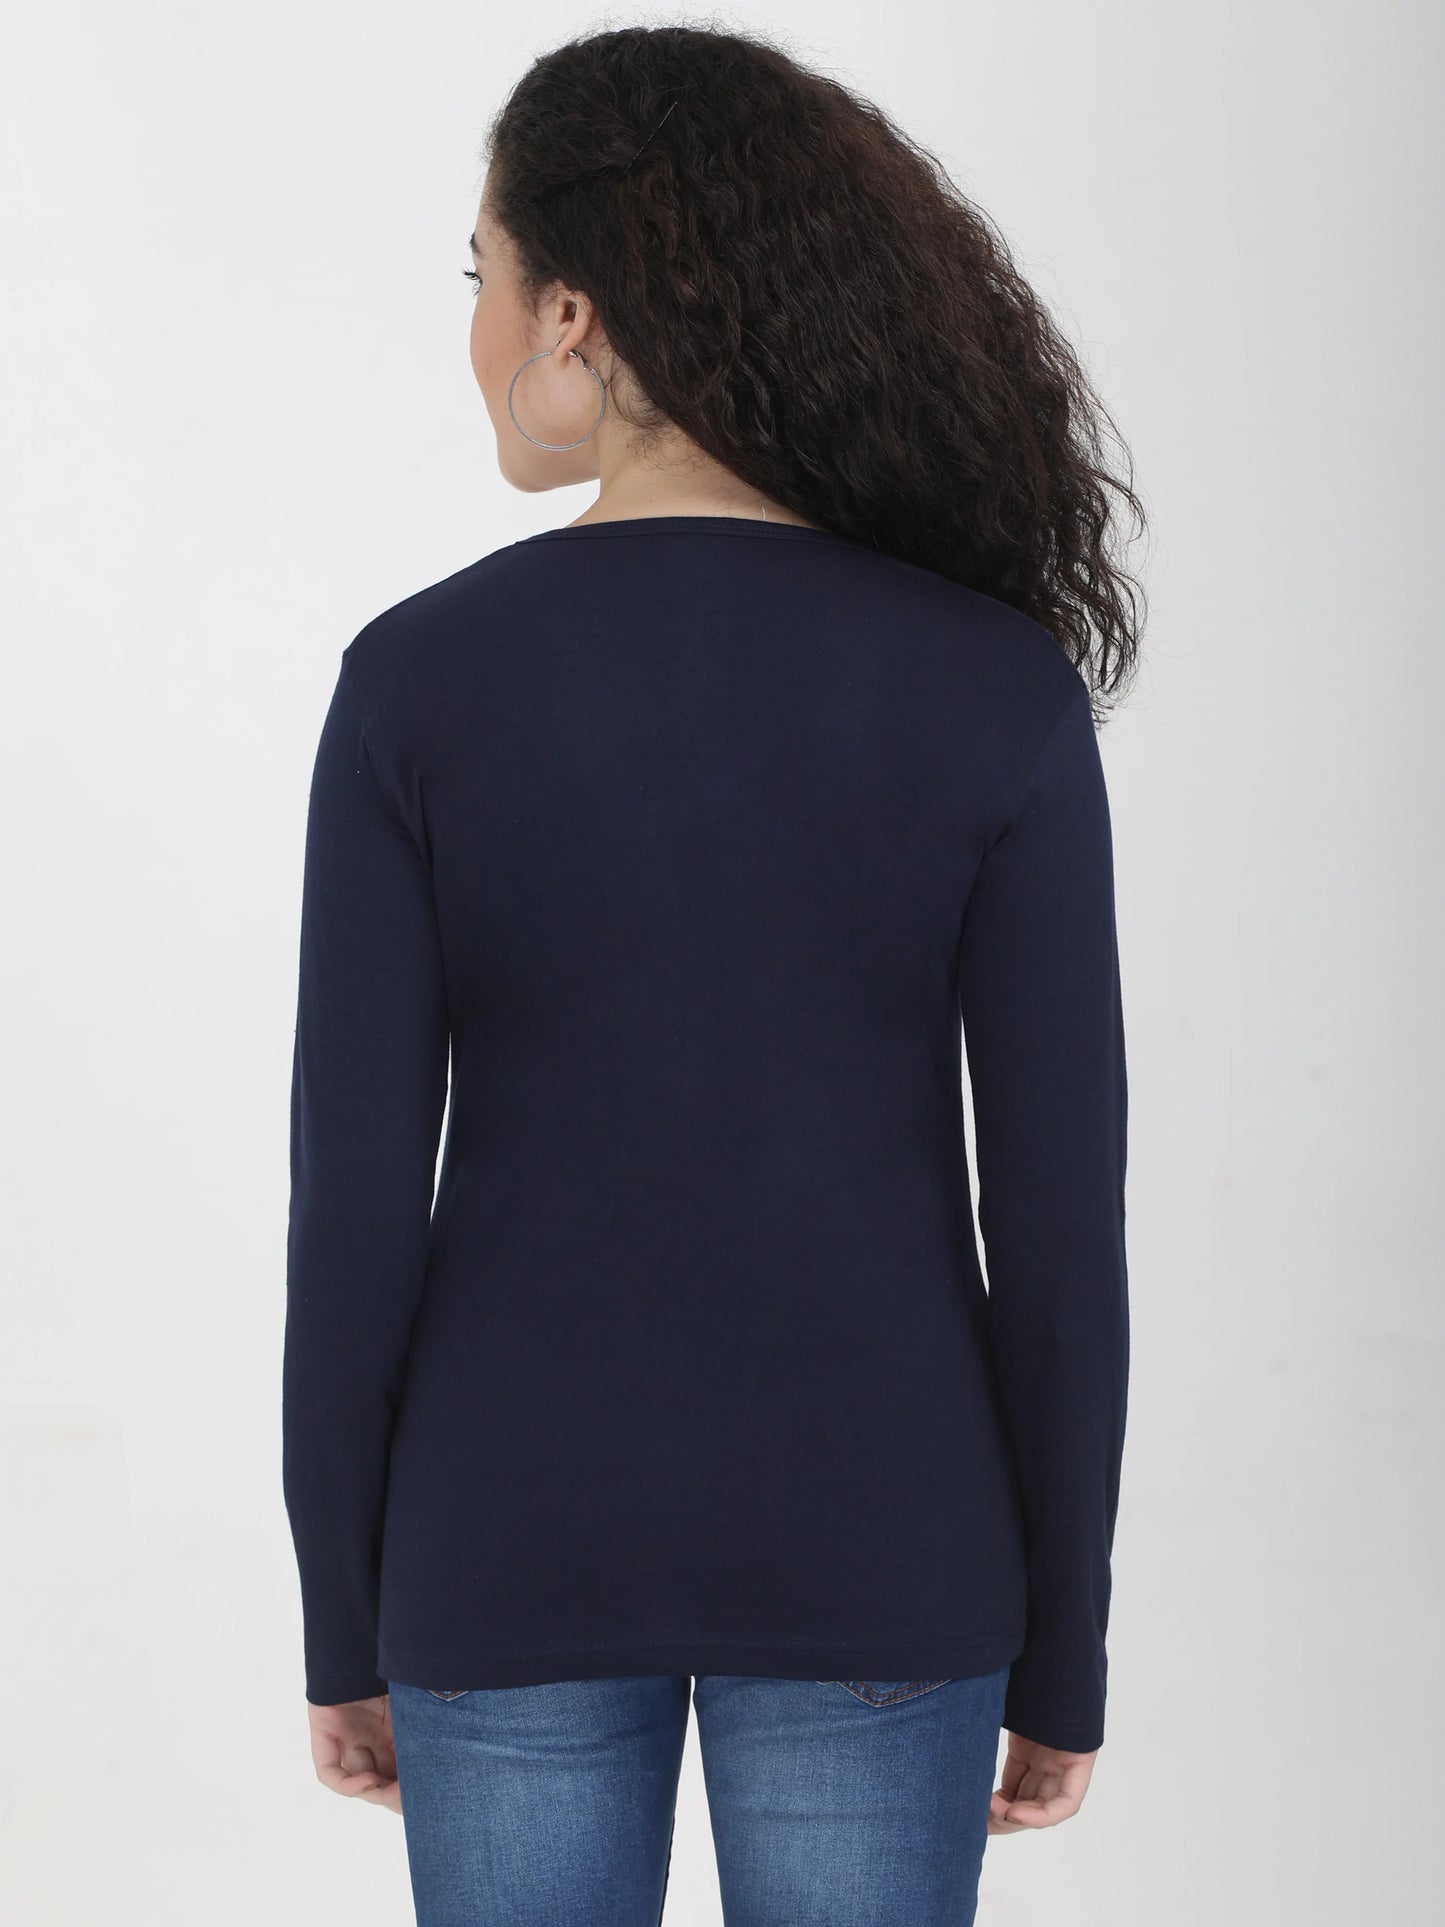 Women's Cotton Plain V Neck Full Sleeve Navy Blue Color T-Shirt